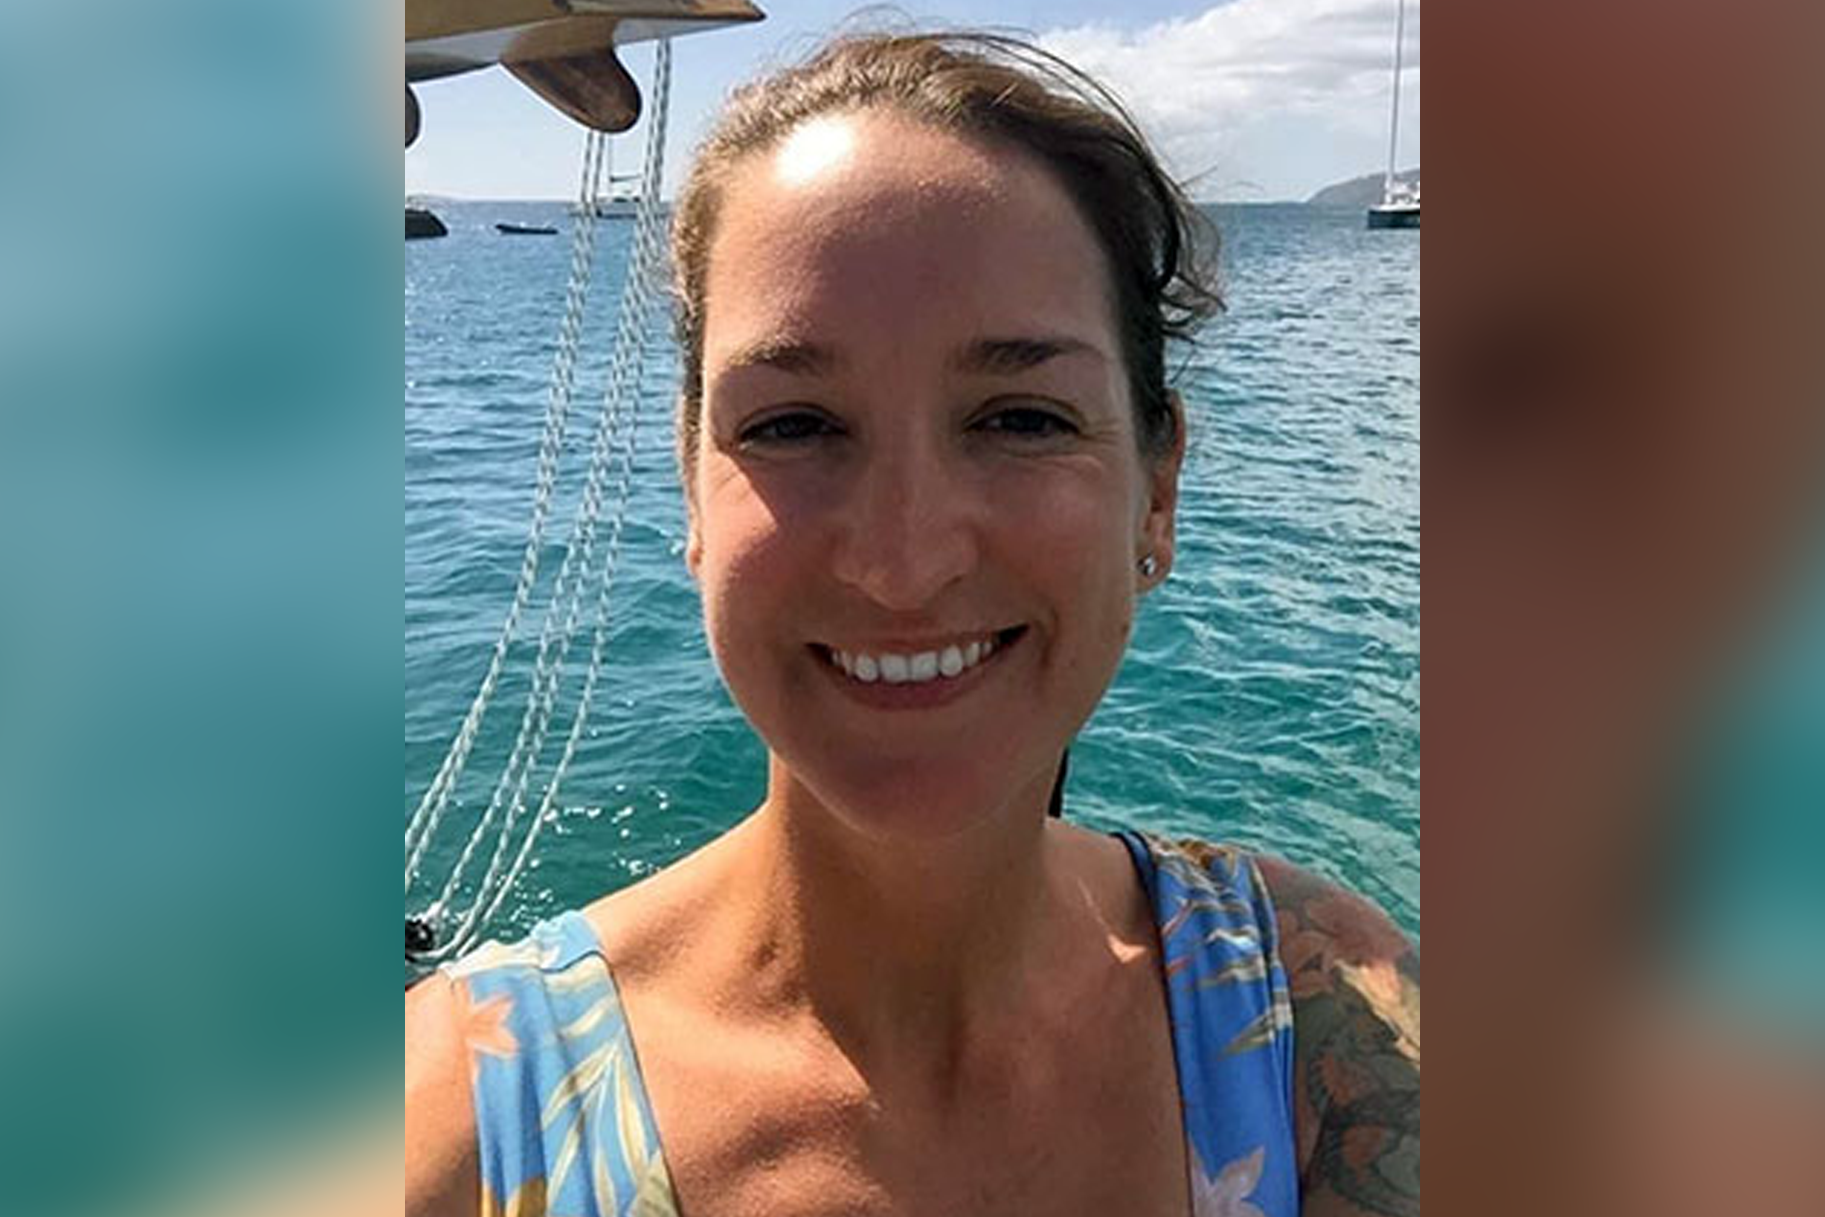 El nuvi d’una dona del Regne Unit desapareguda que va desaparèixer del vaixell a les Illes Verges va ser arrestat prèviament per maltractament domèstic